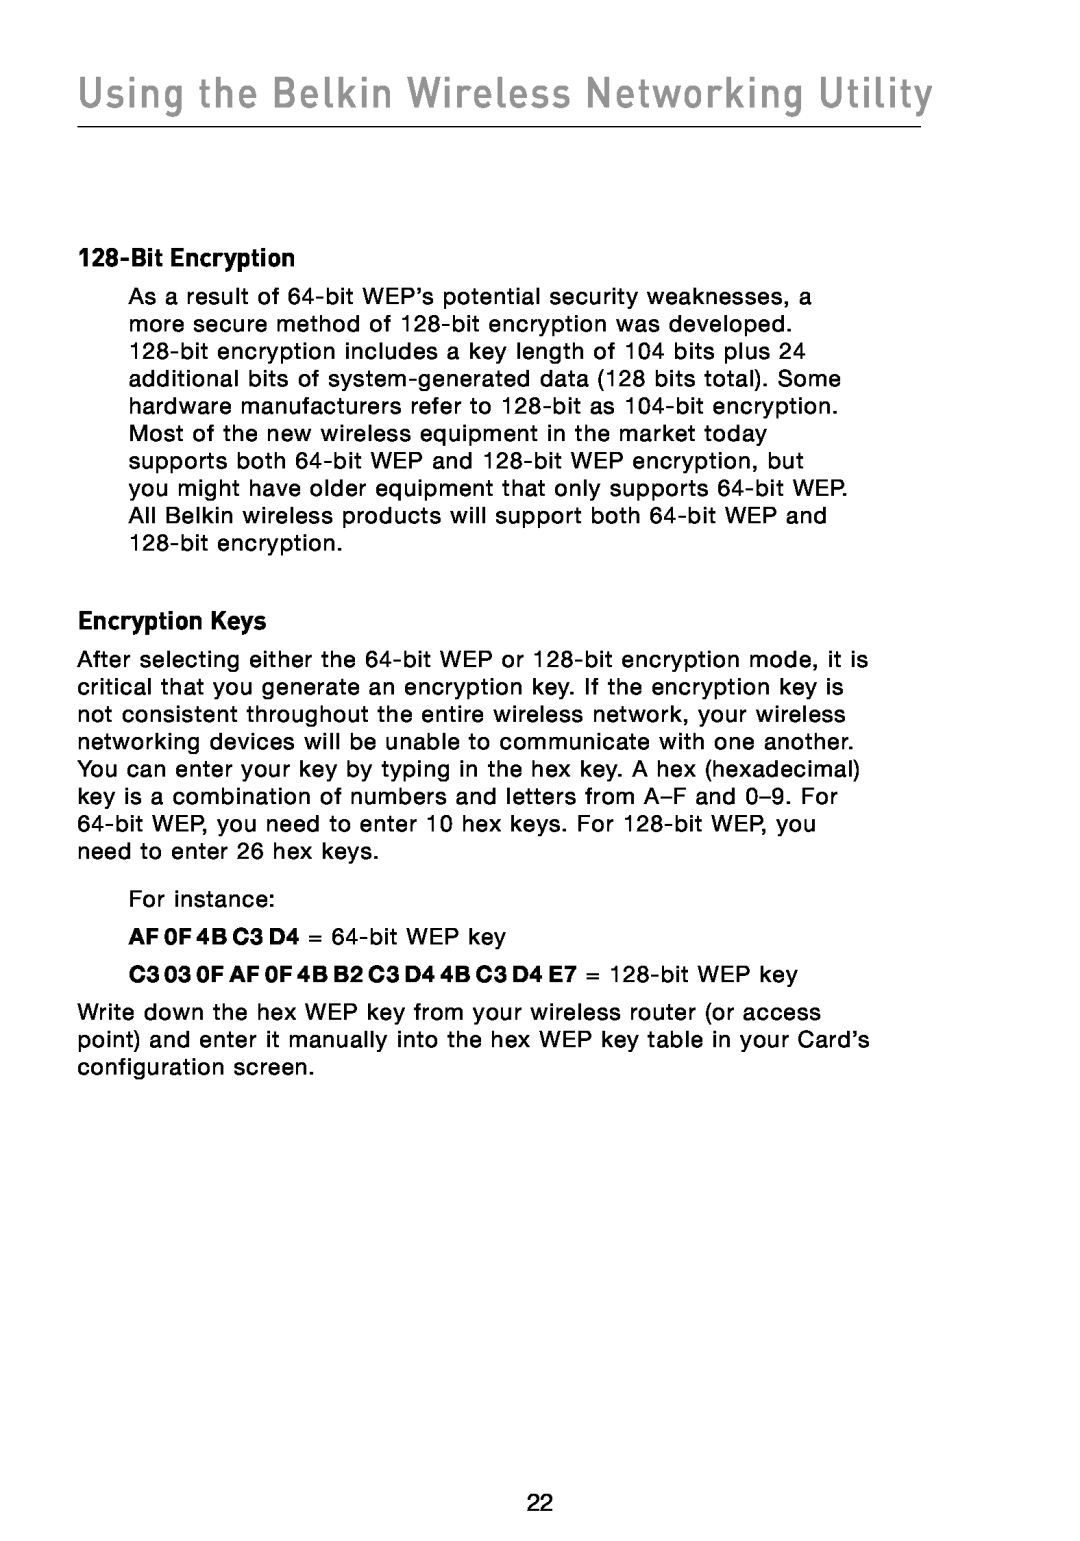 Belkin F5D8013 user manual Bit Encryption, Encryption Keys, Using the Belkin Wireless Networking Utility 